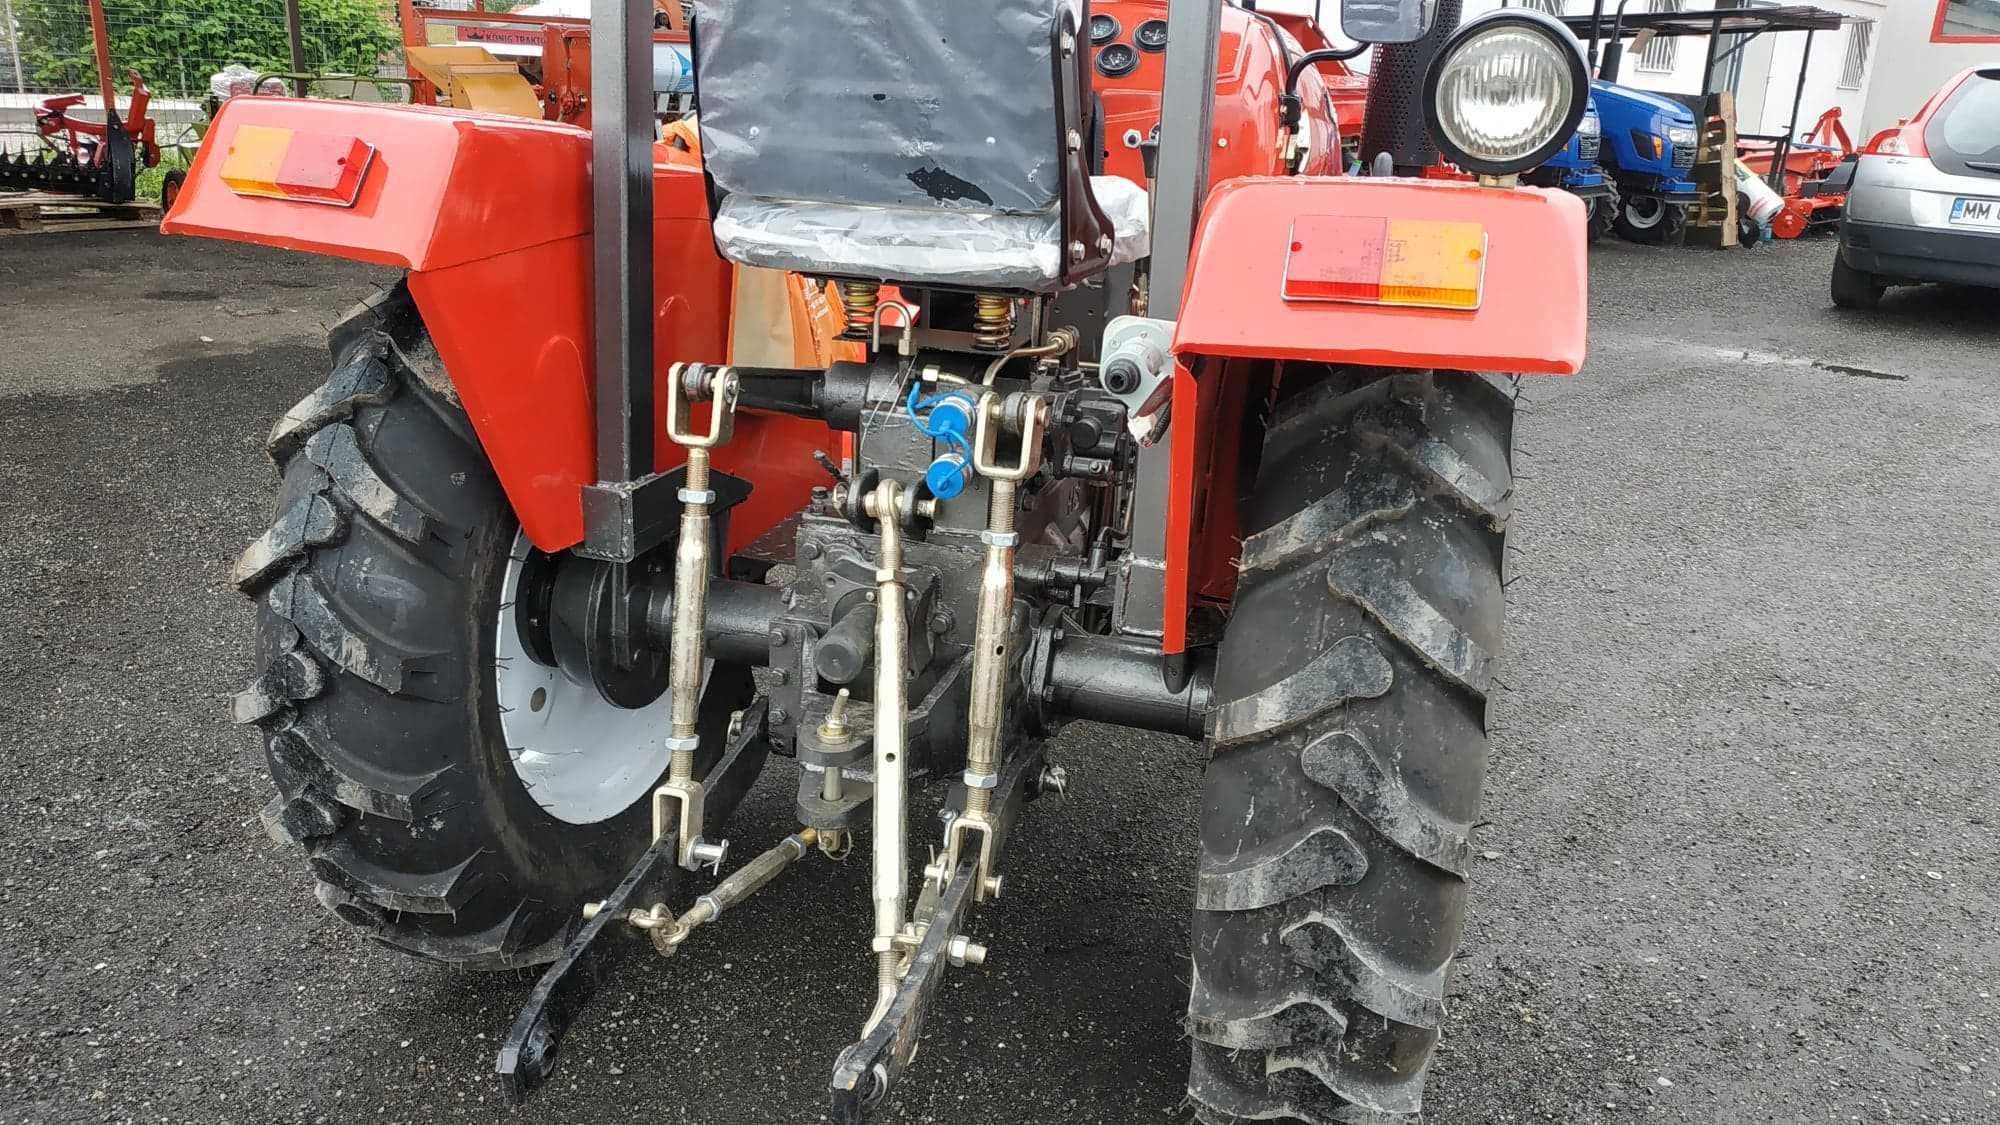 Tractor Konig cu acoperis putere 25CP nou Agramix